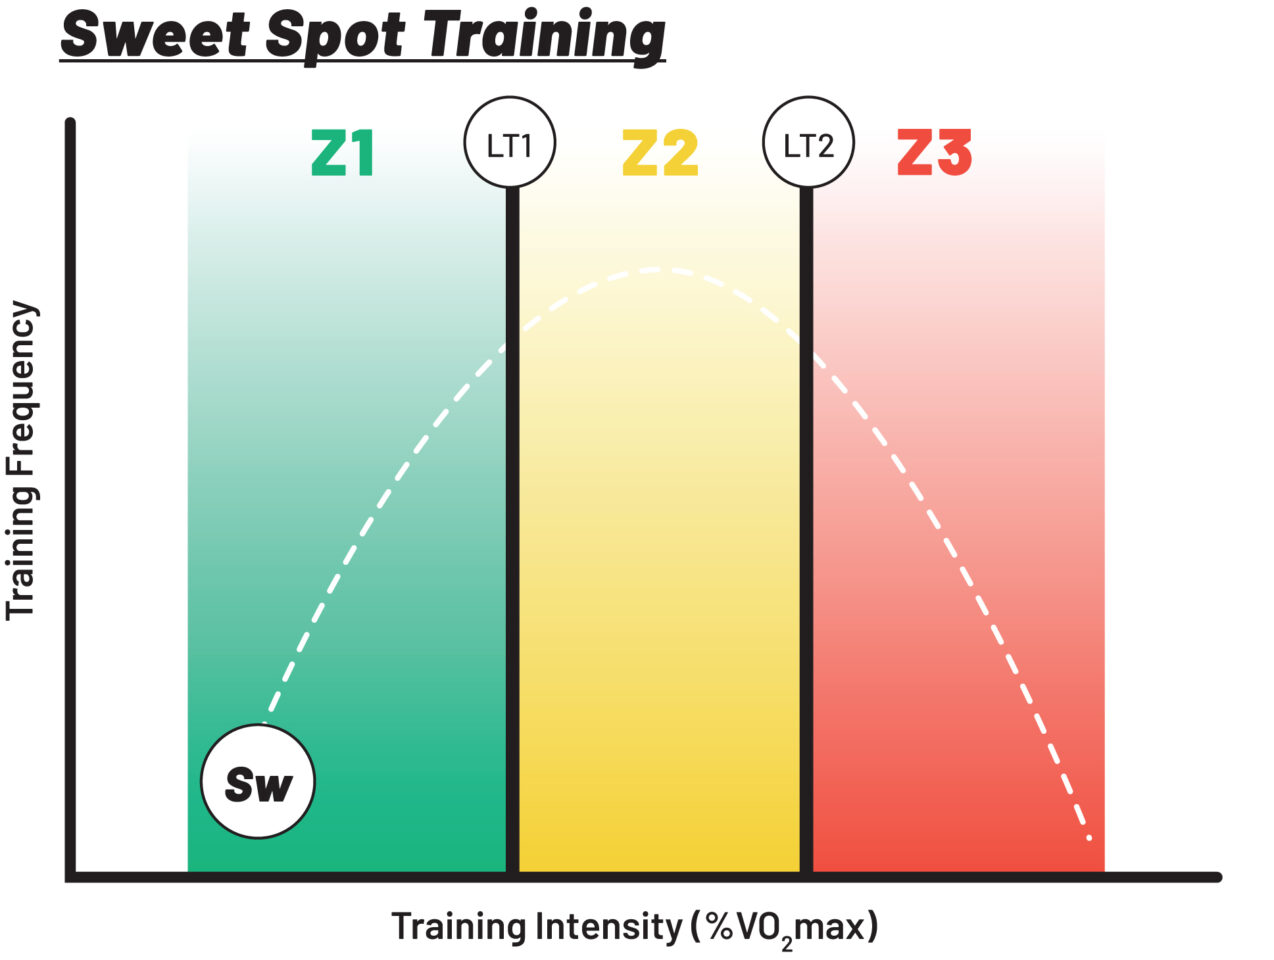 Polarized Training vs. Sweet Spot and Pyramidal